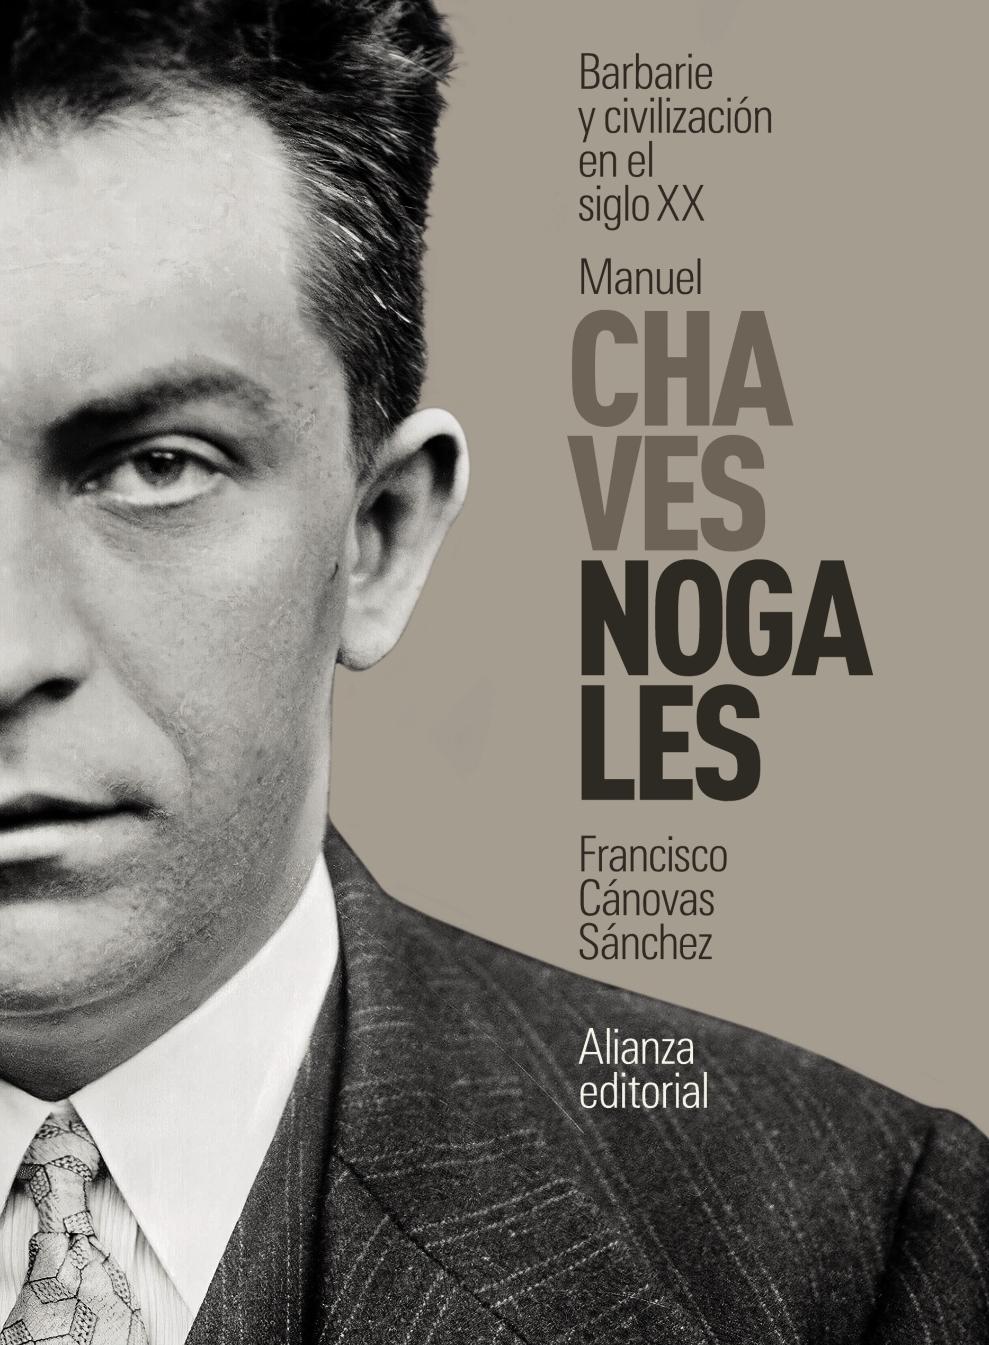 Manuel Chaves Nogales "Barbarie y Civilización en el Siglo Xx". 